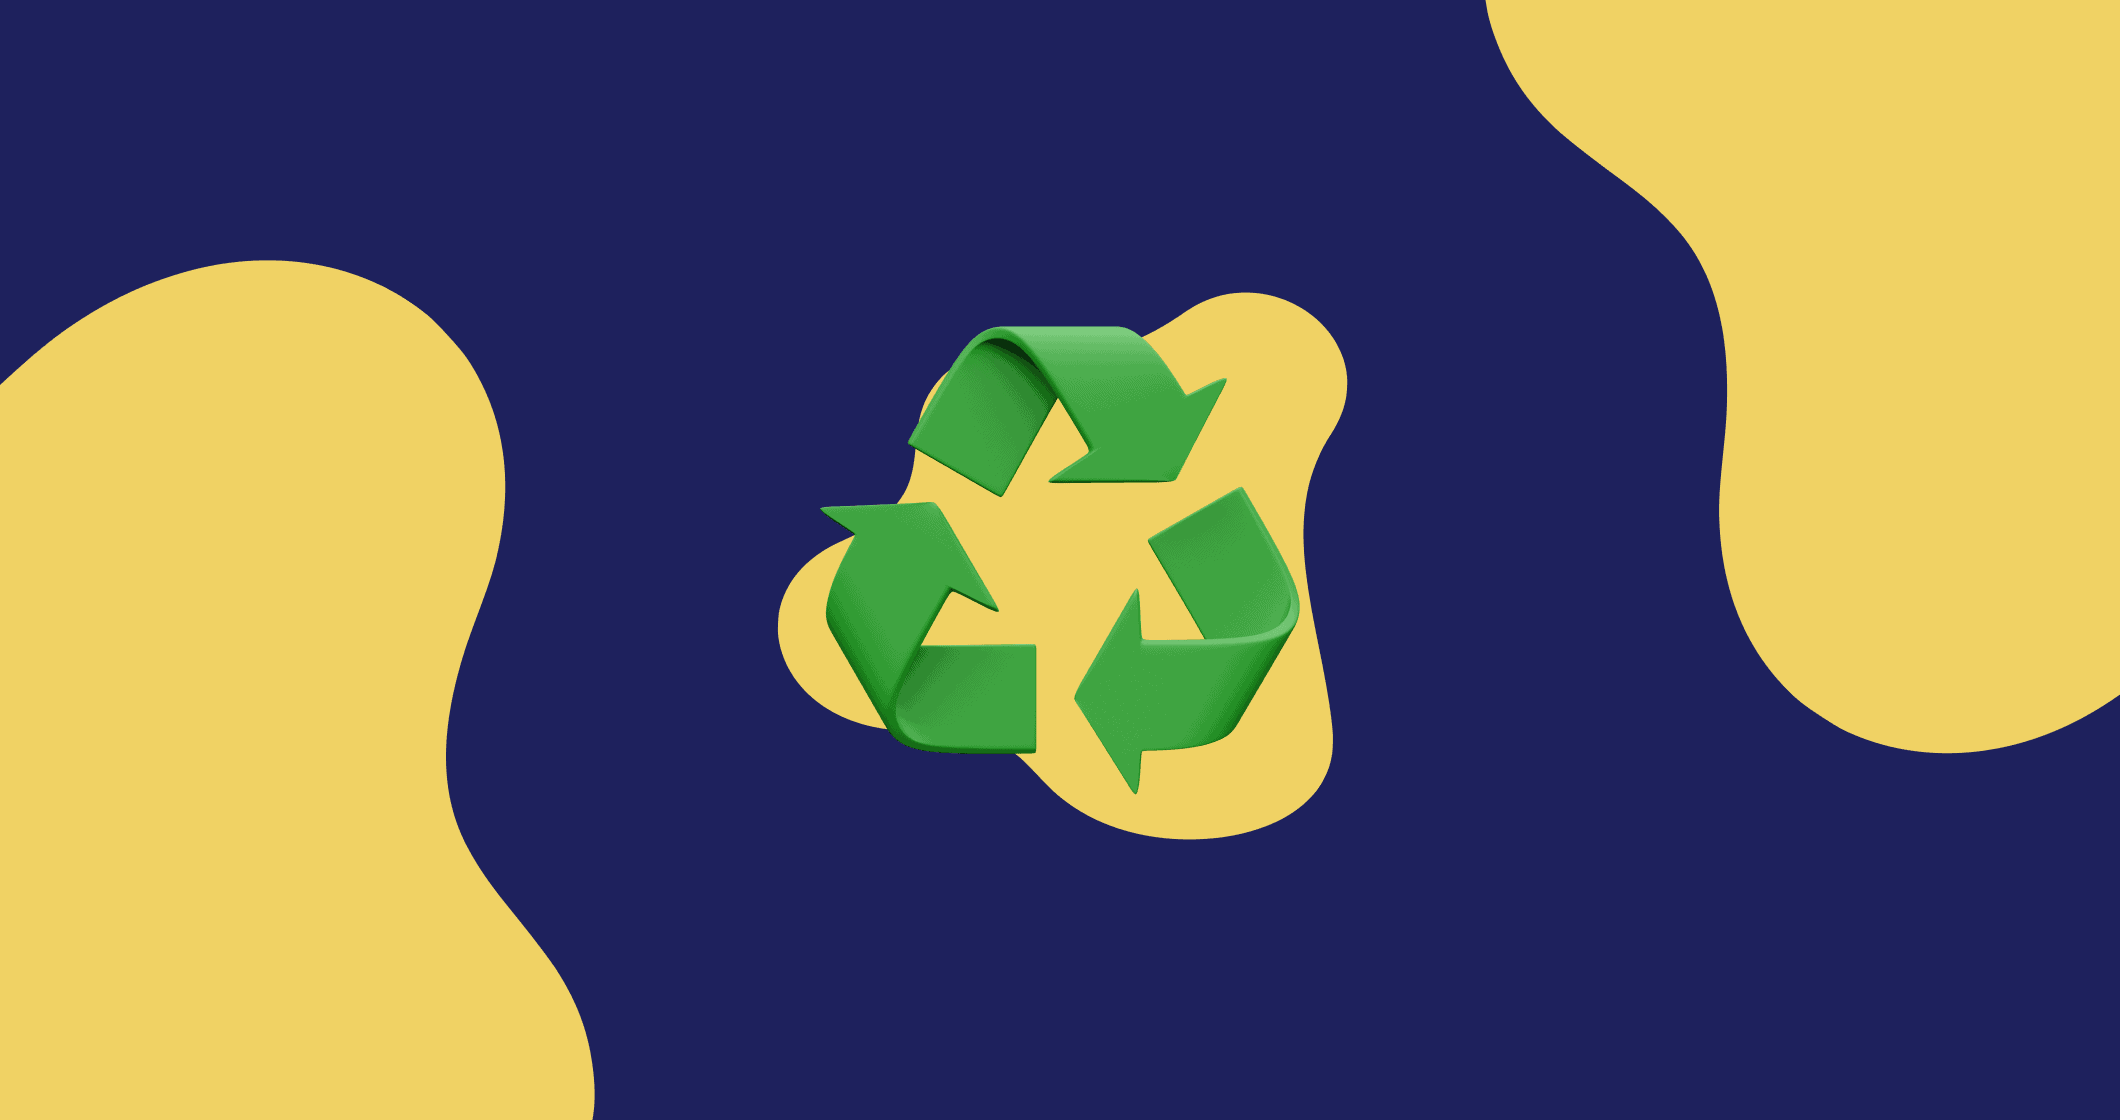 Um logotipo iso com um símbolo de reciclagem verde em um fundo azul e amarelo.